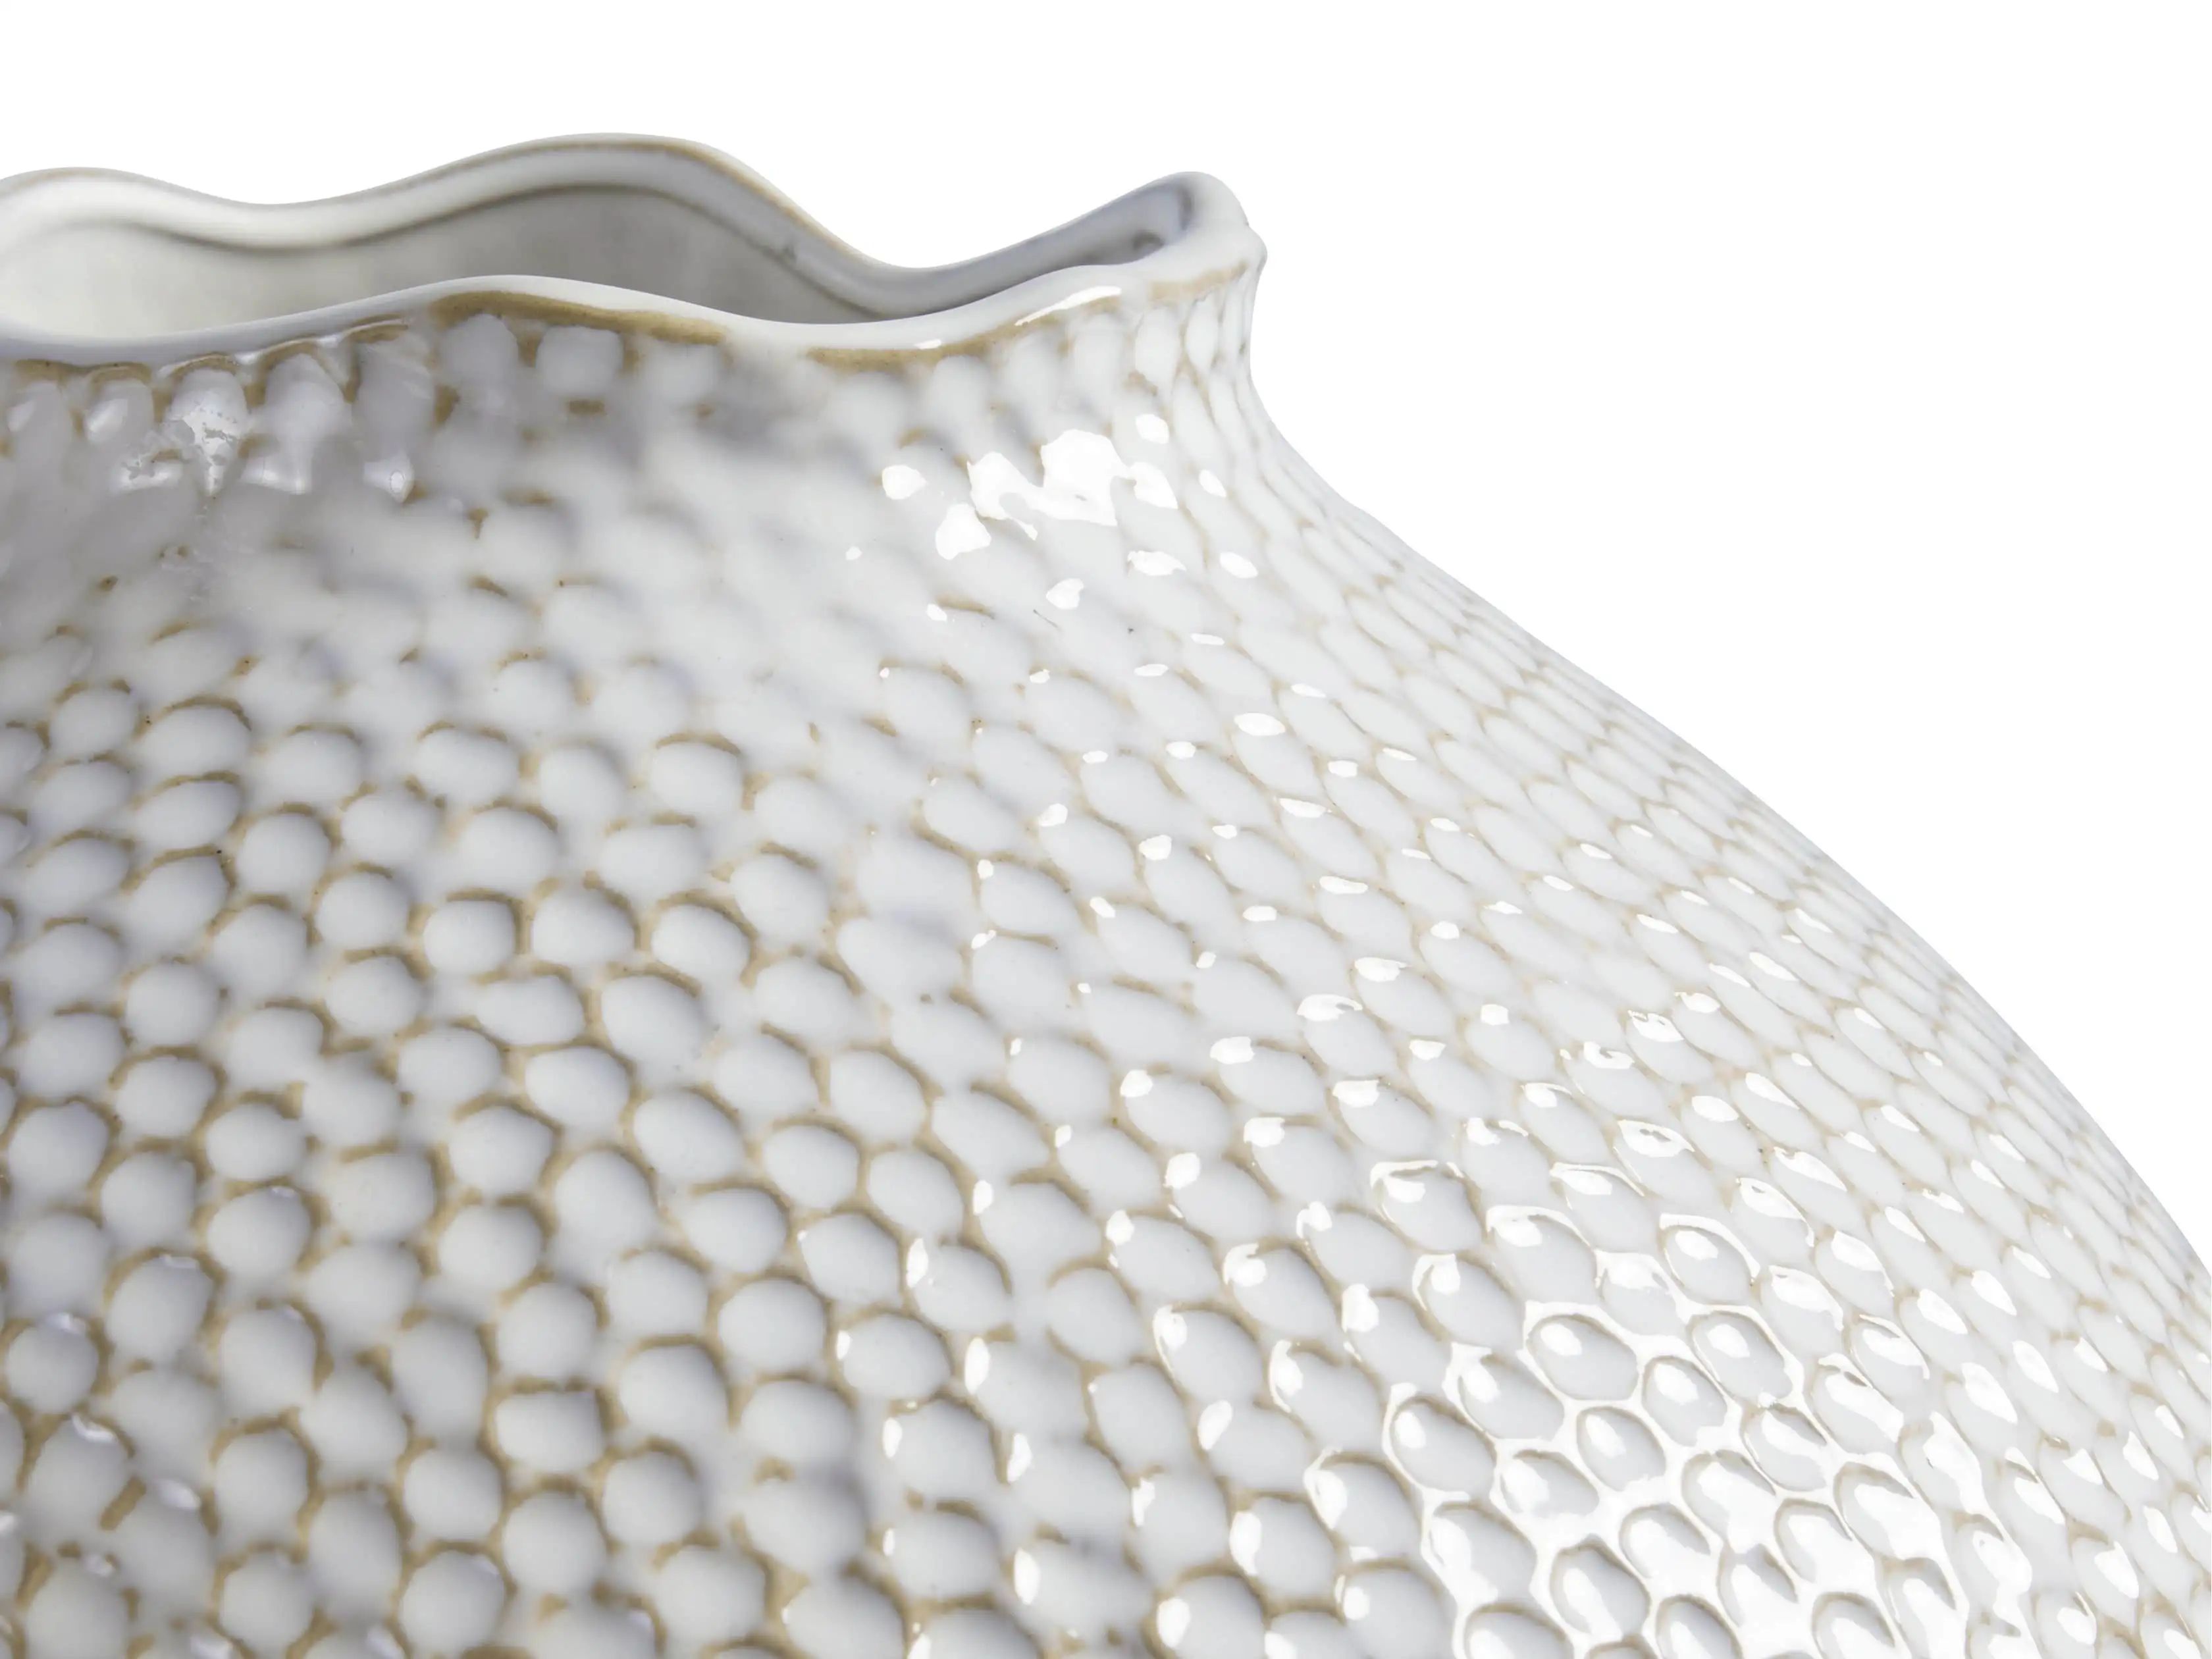 Eva Large Round Vase in Cream | Arhaus